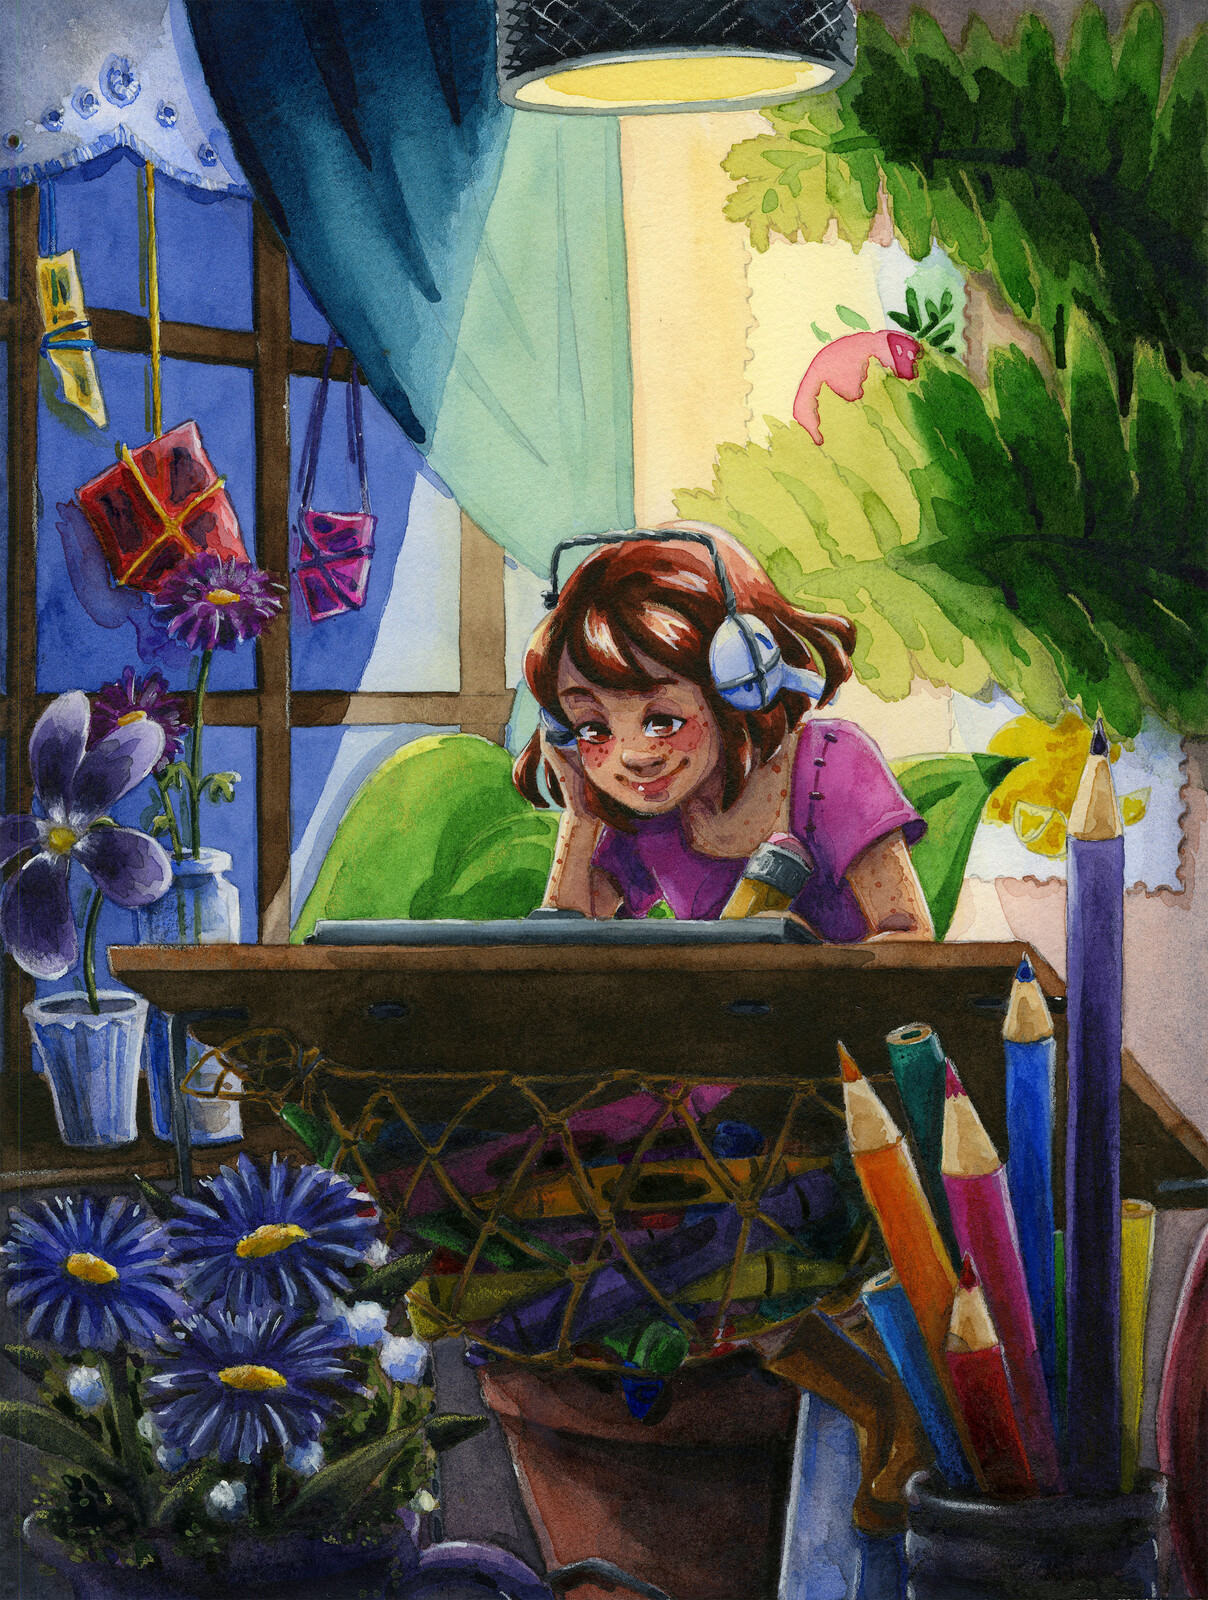 Watercolor illustration reimaginging the LoFi girl